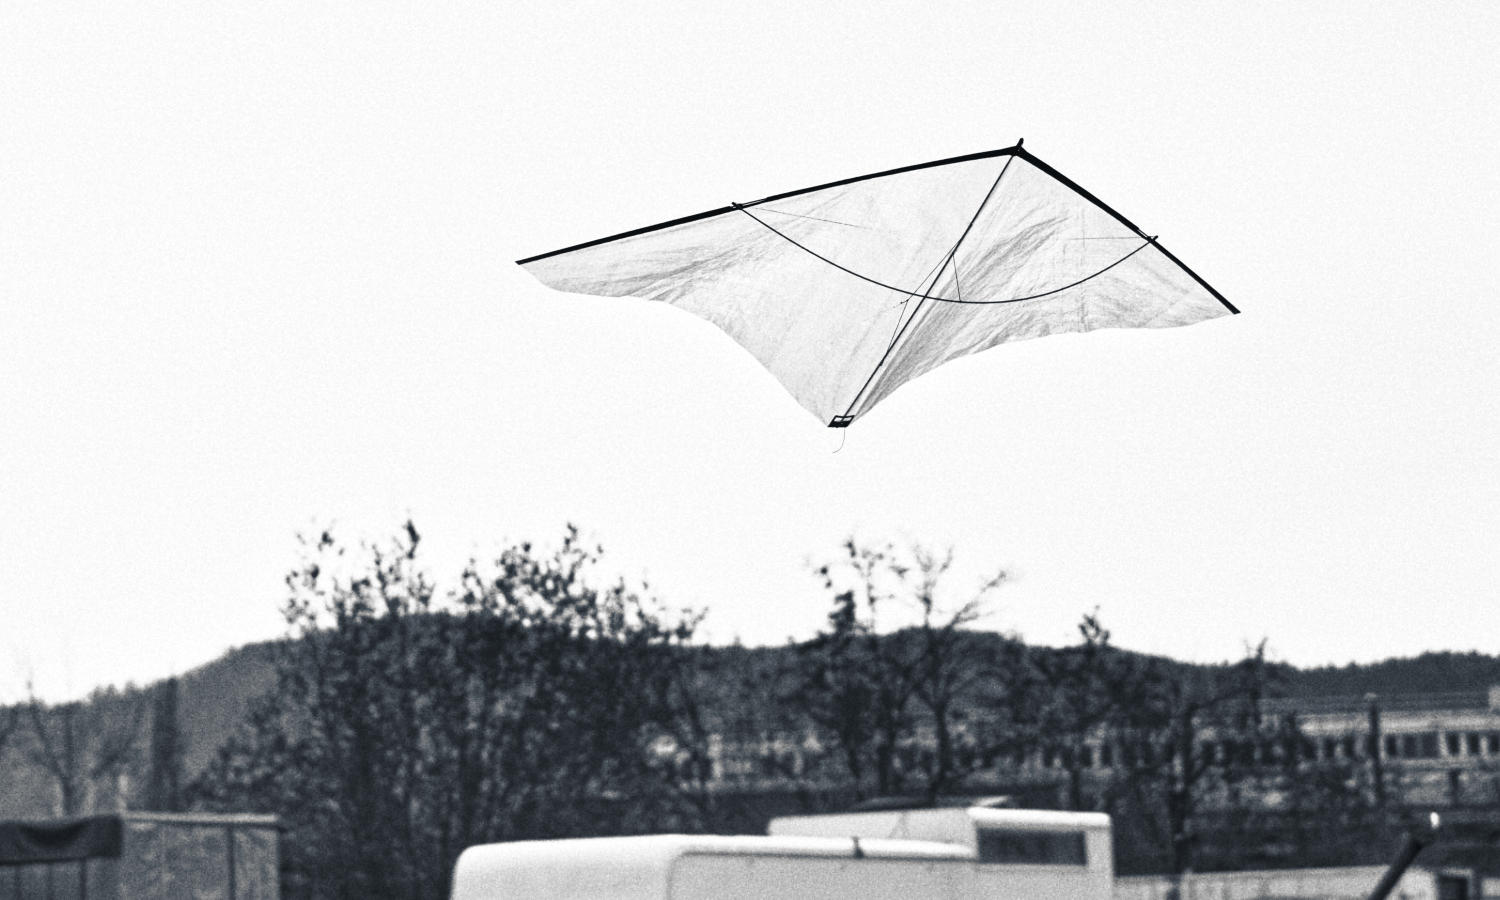 The hyperlight zero wind kite over the stadium wasteland in Zurich.